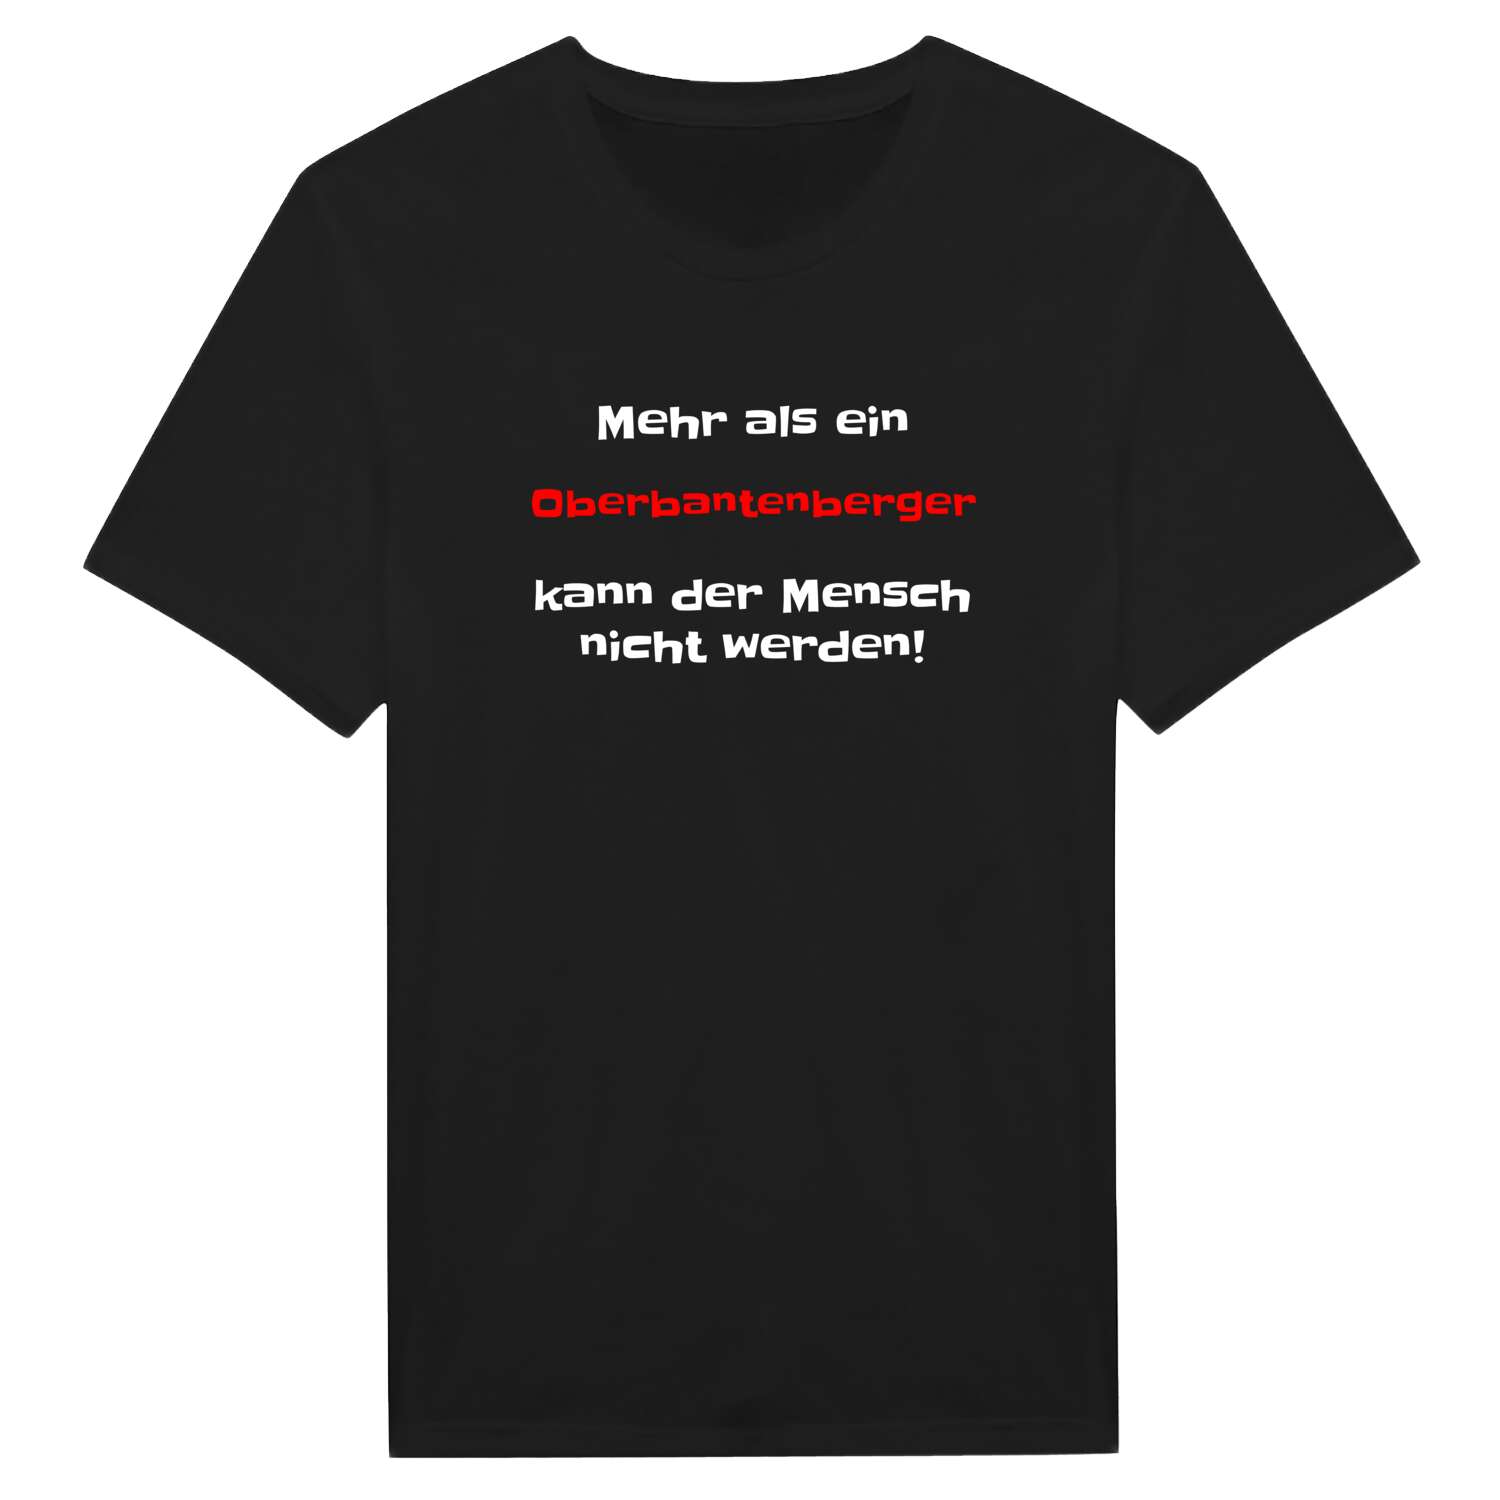 Oberbantenberg T-Shirt »Mehr als ein«